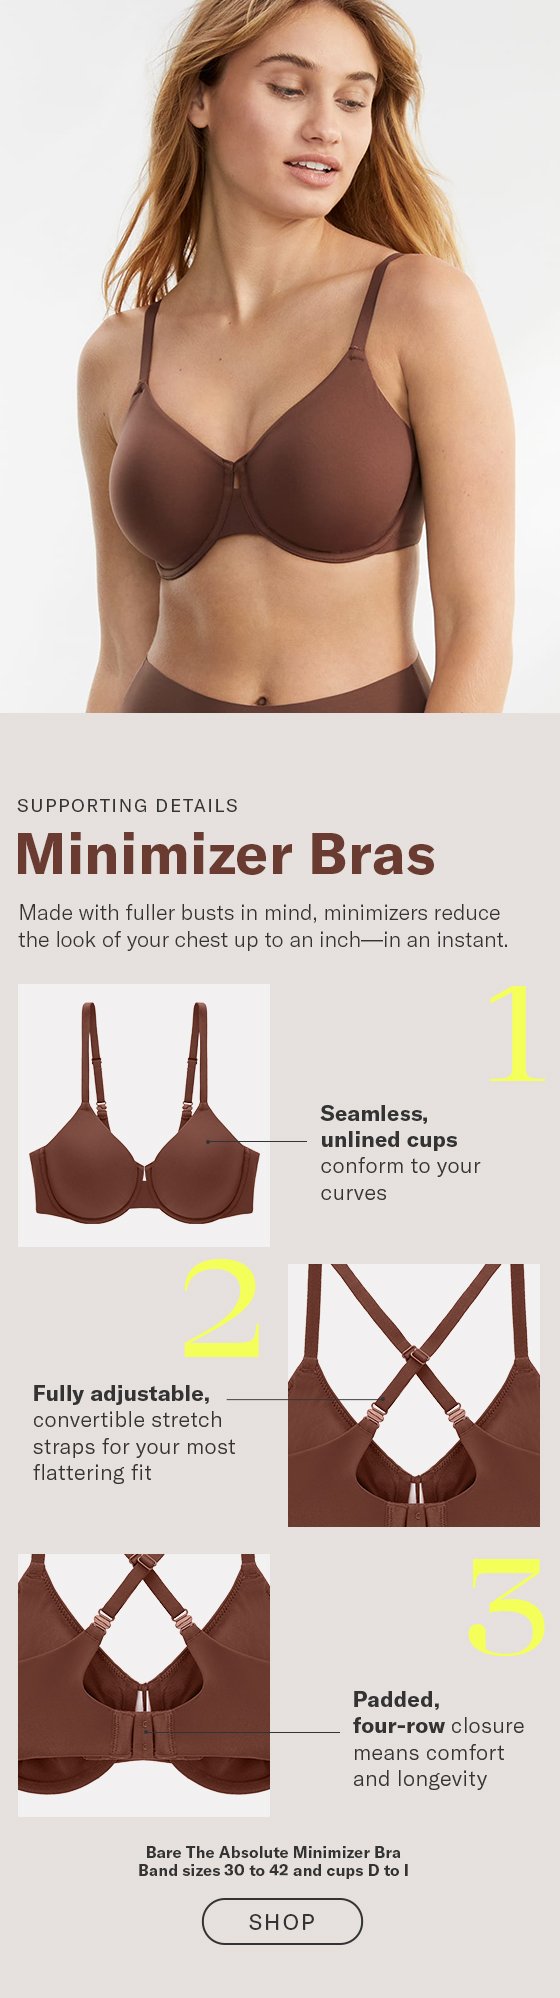 Minimizer Bra - Shop on Pinterest